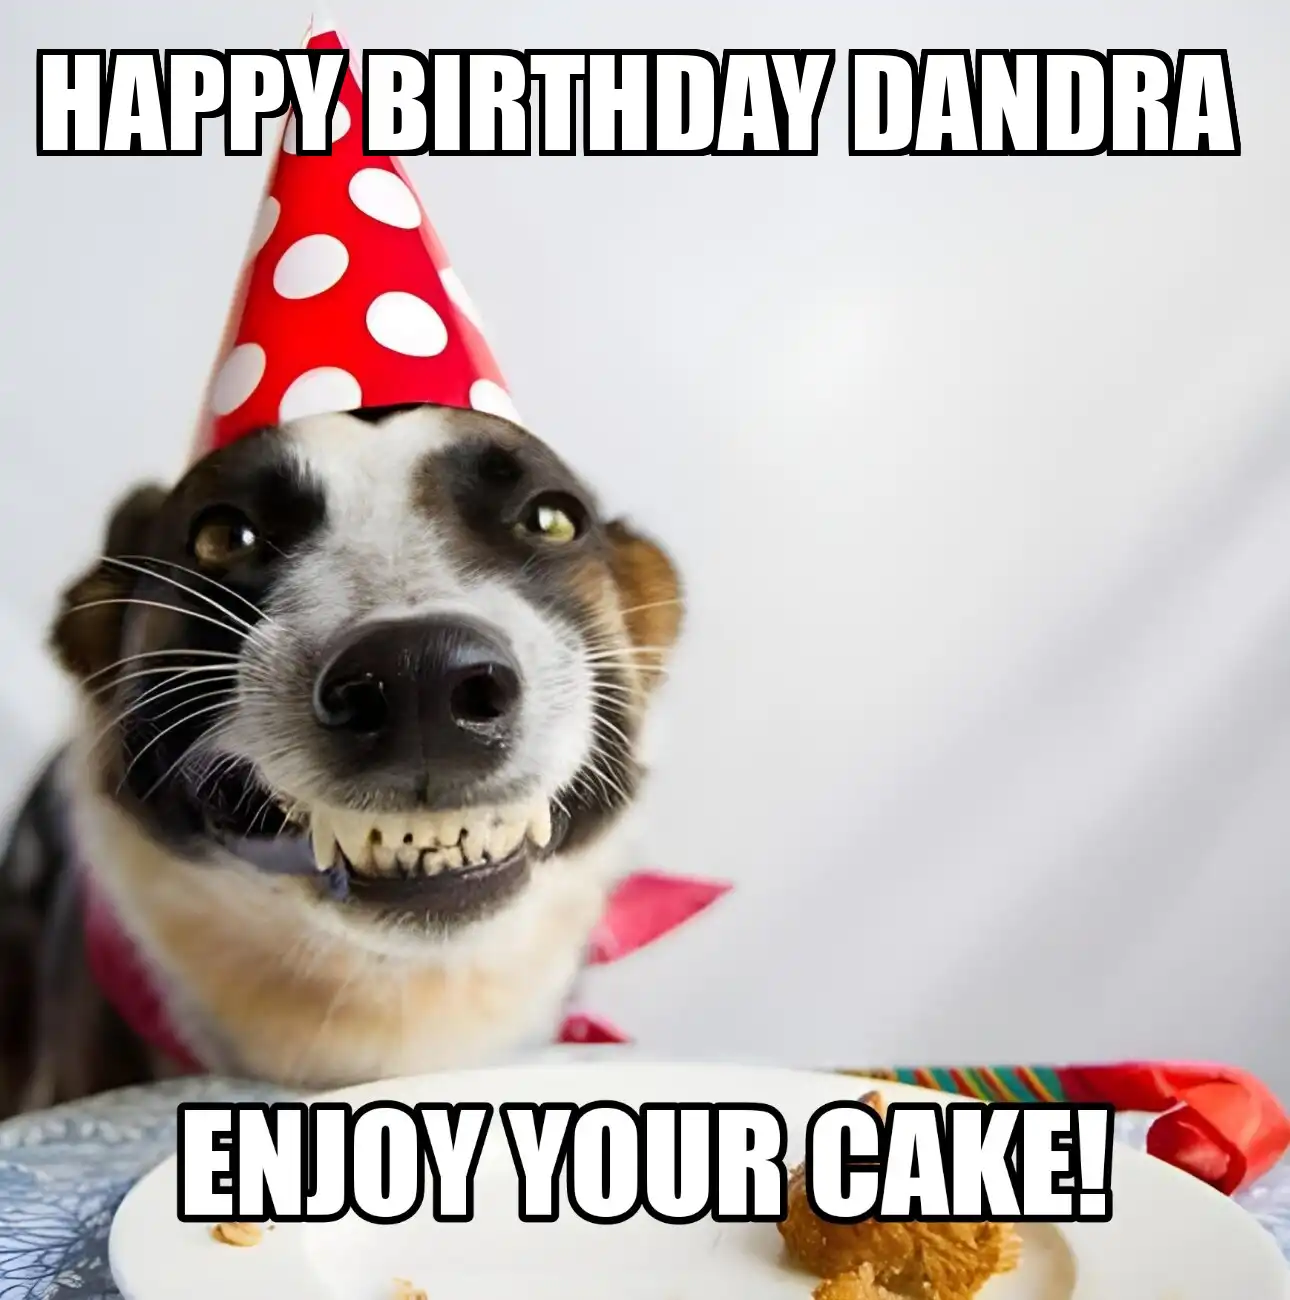 Happy Birthday Dandra Enjoy Your Cake Dog Meme